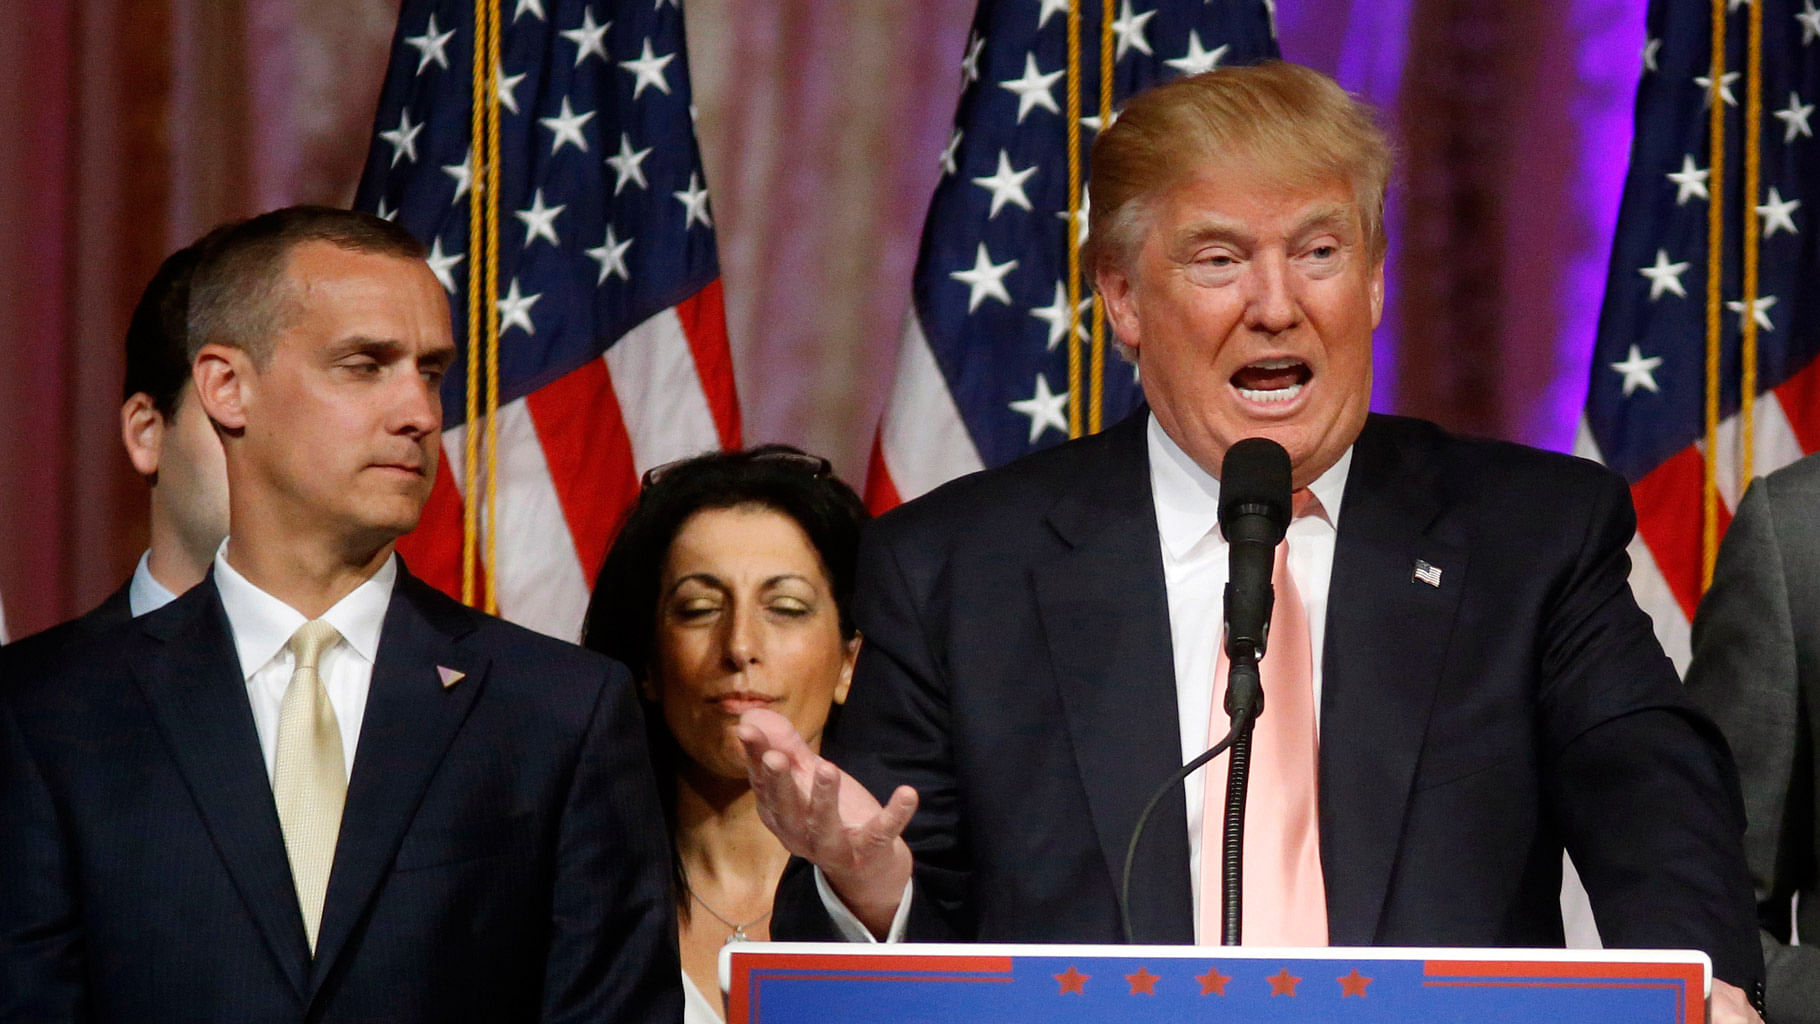 Corey Lewandowski and Donald Trump at an event. (Photo: AP)